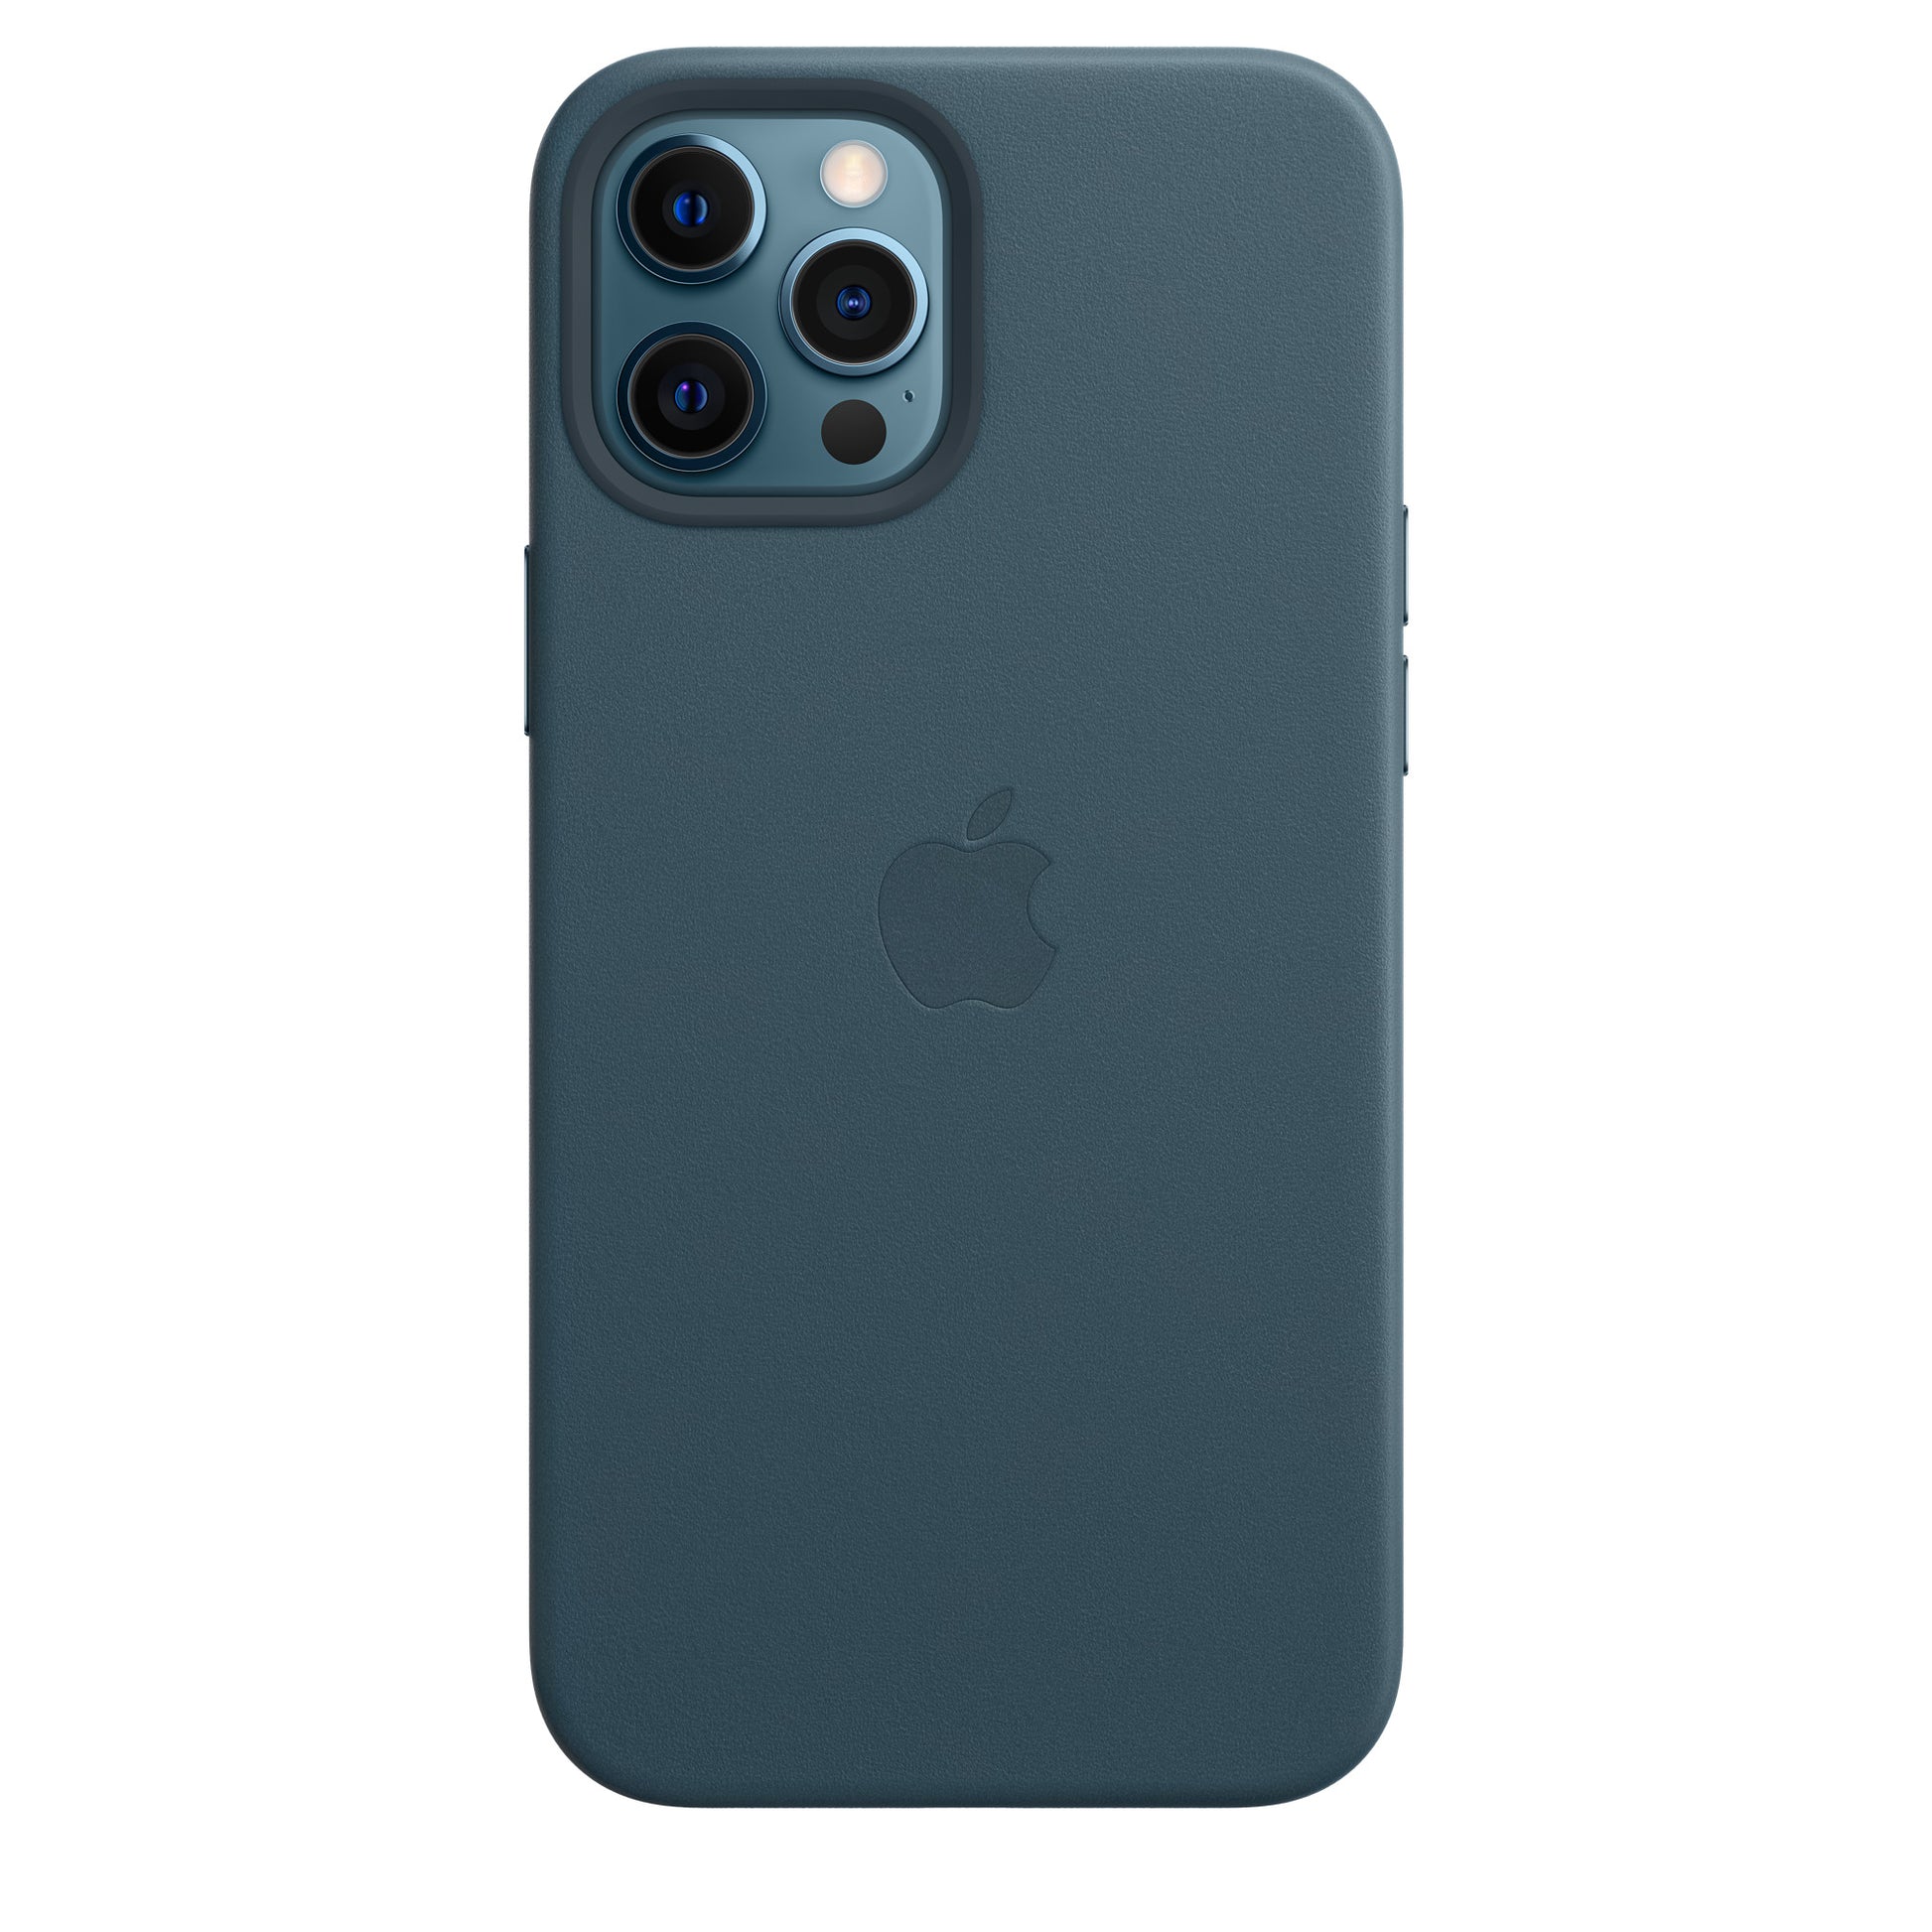 Apple Leather Folio (for iPhone 11 Pro Max) - Deep Sea Blue